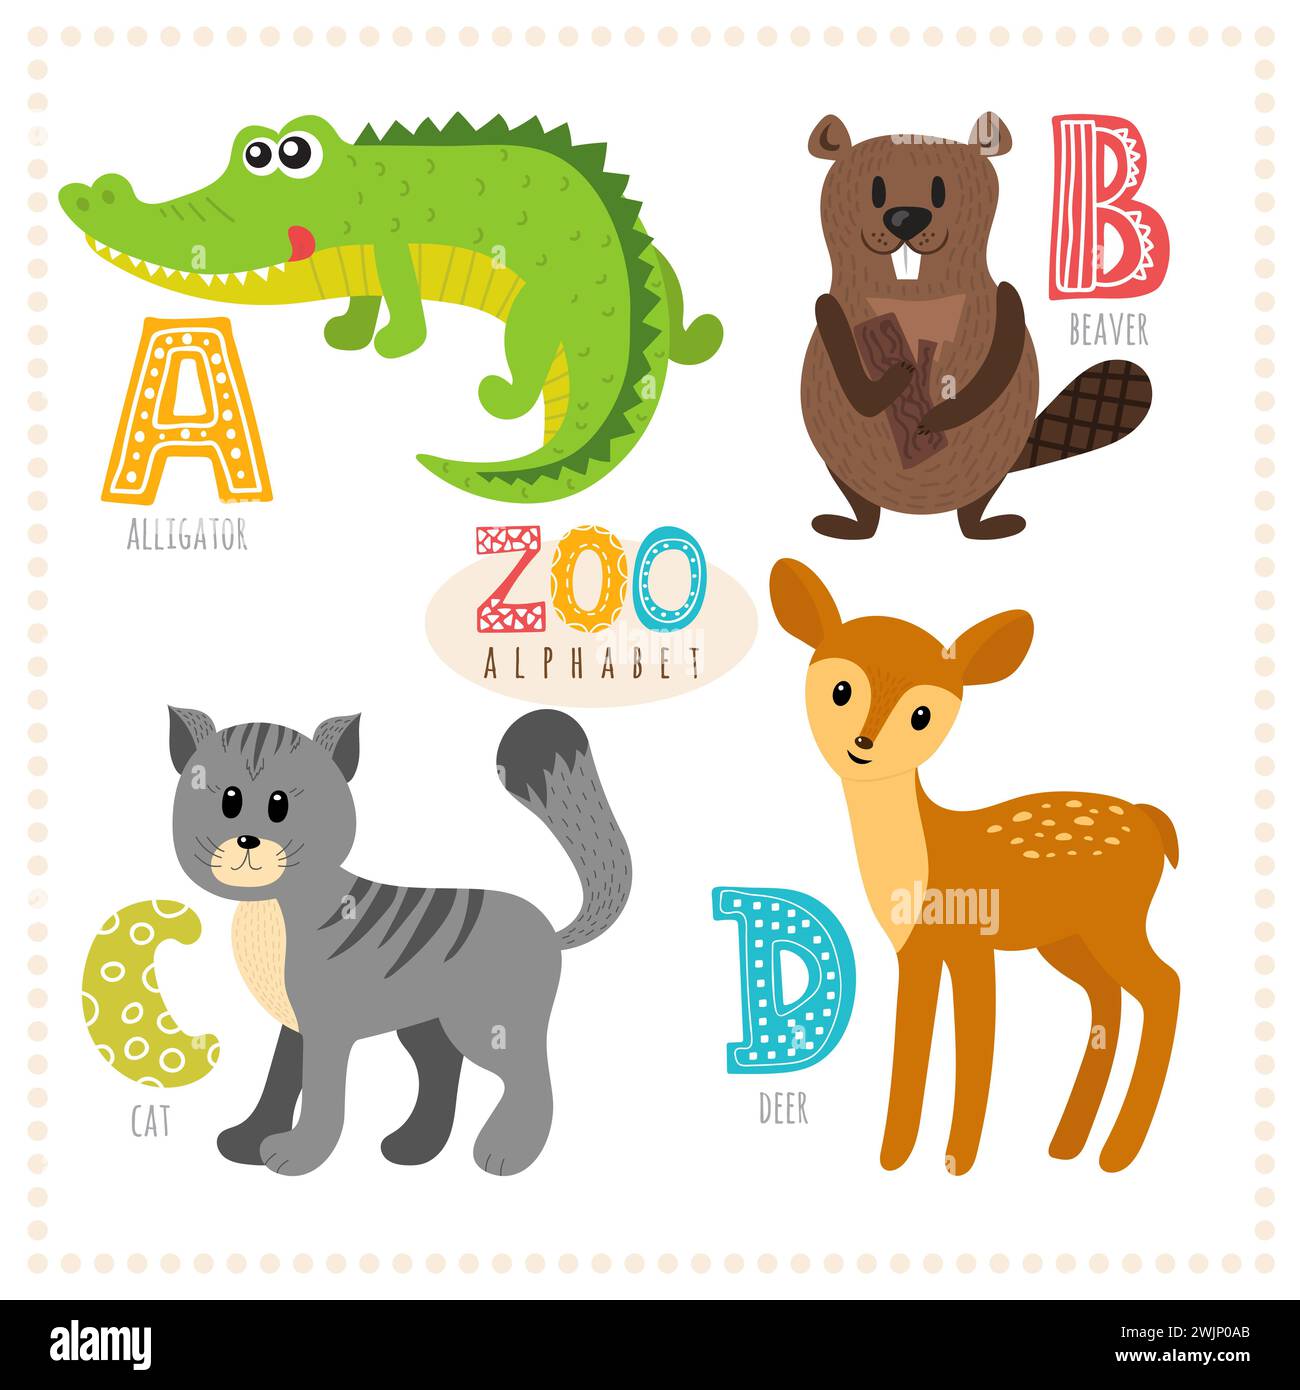 Niedliche Zeichentricktiere. Zoo-Alphabet mit lustigen Tieren. Buchstaben a, b, c, d. Alligator, Biber, Katze, Hirsch. Vektorabbildung Stock Vektor